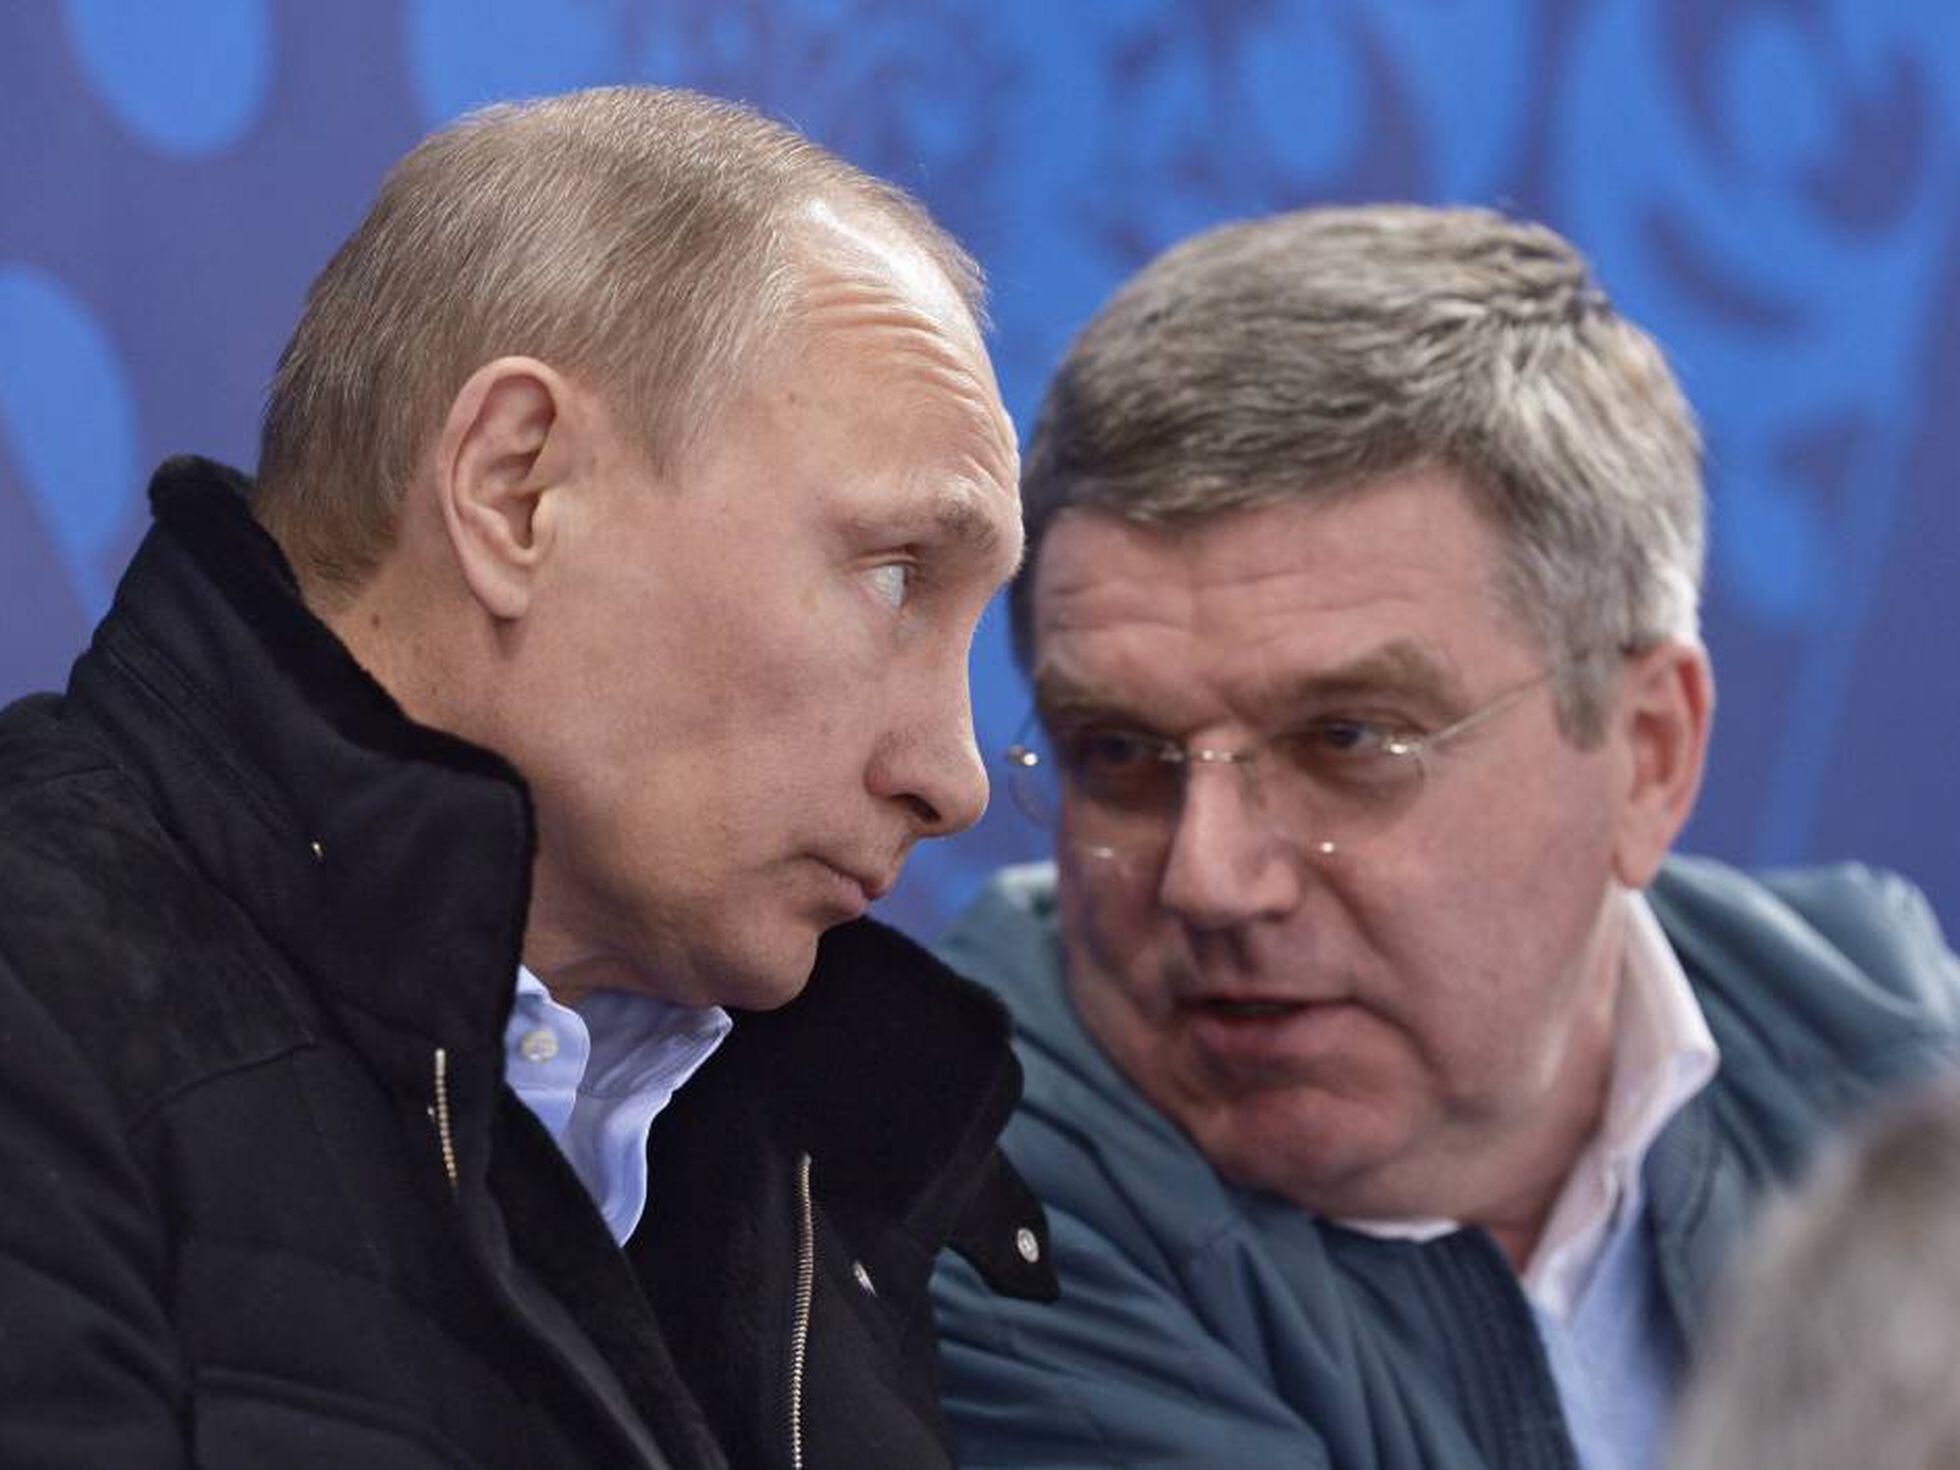 Rússia entra com recurso contra proibição de atletas nos Jogos Olímpicos